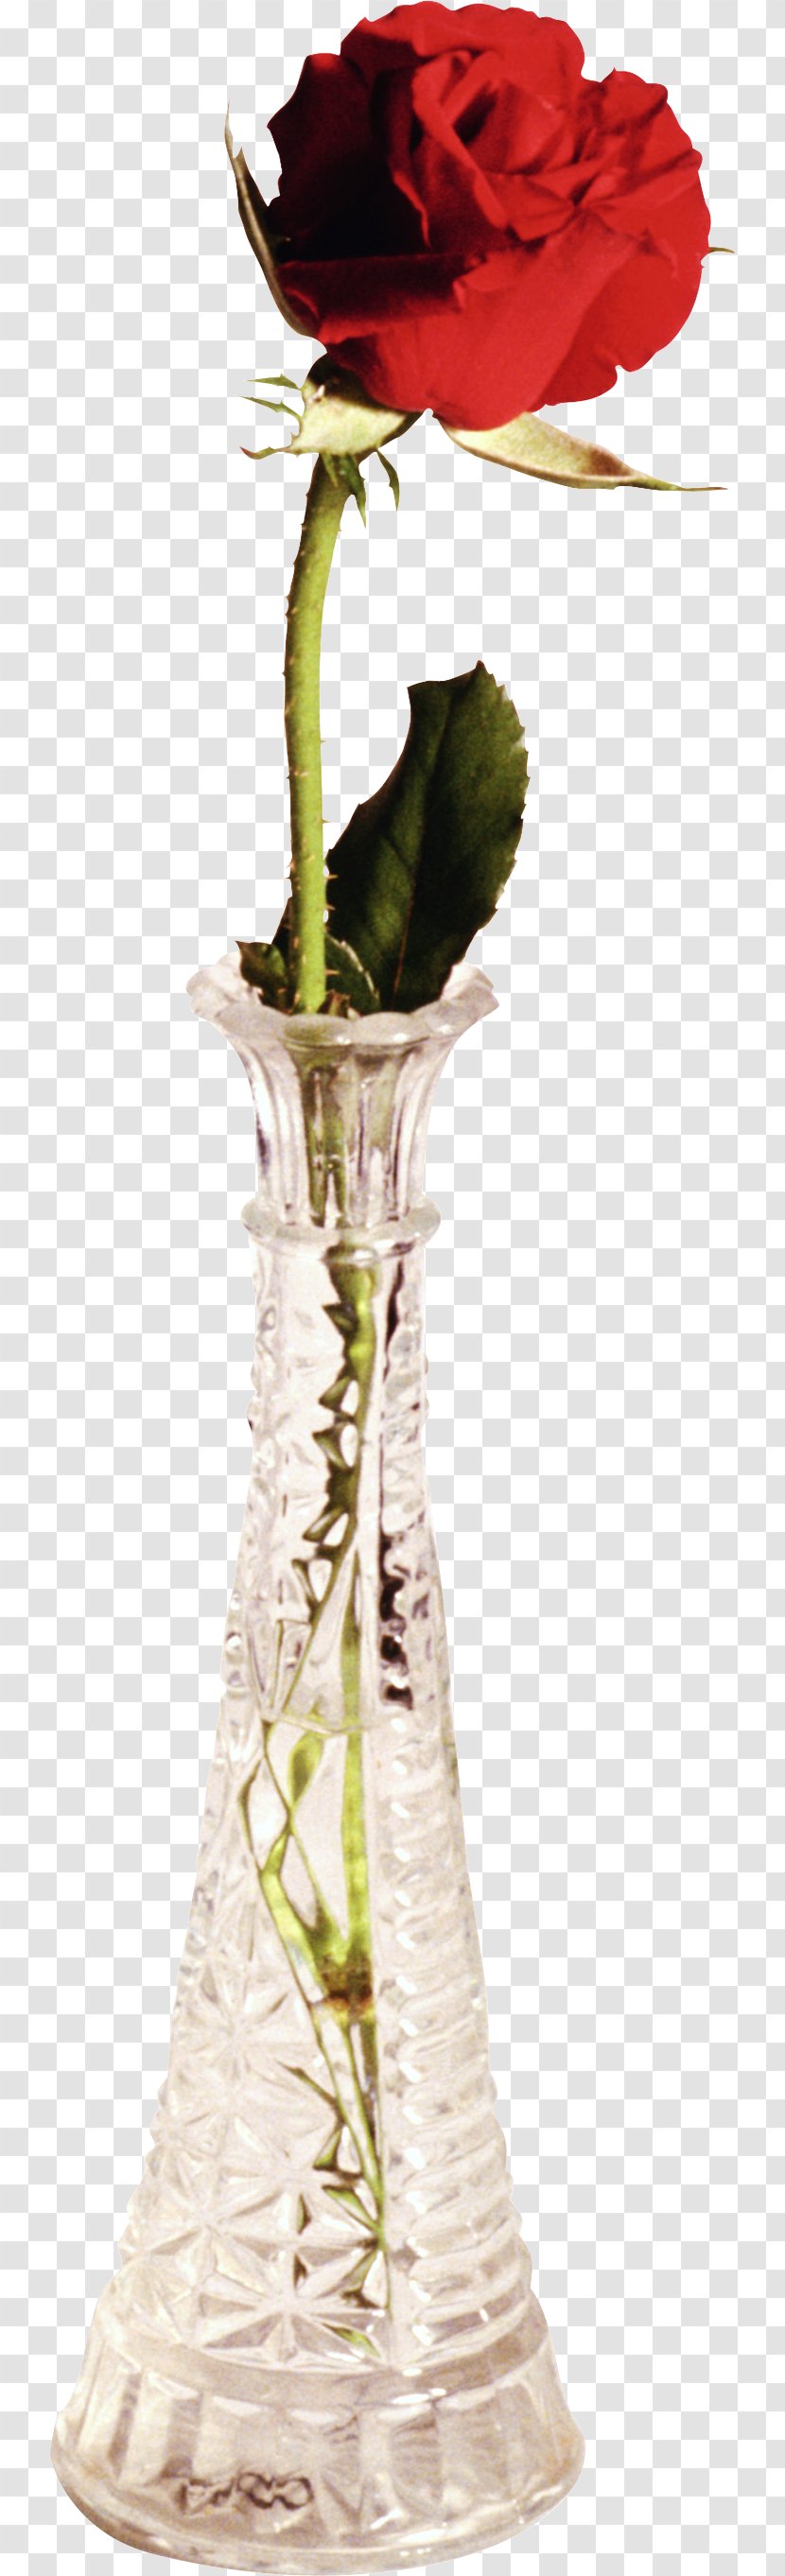 Vase Flower Bouquet Garden Roses - Digital Image Transparent PNG